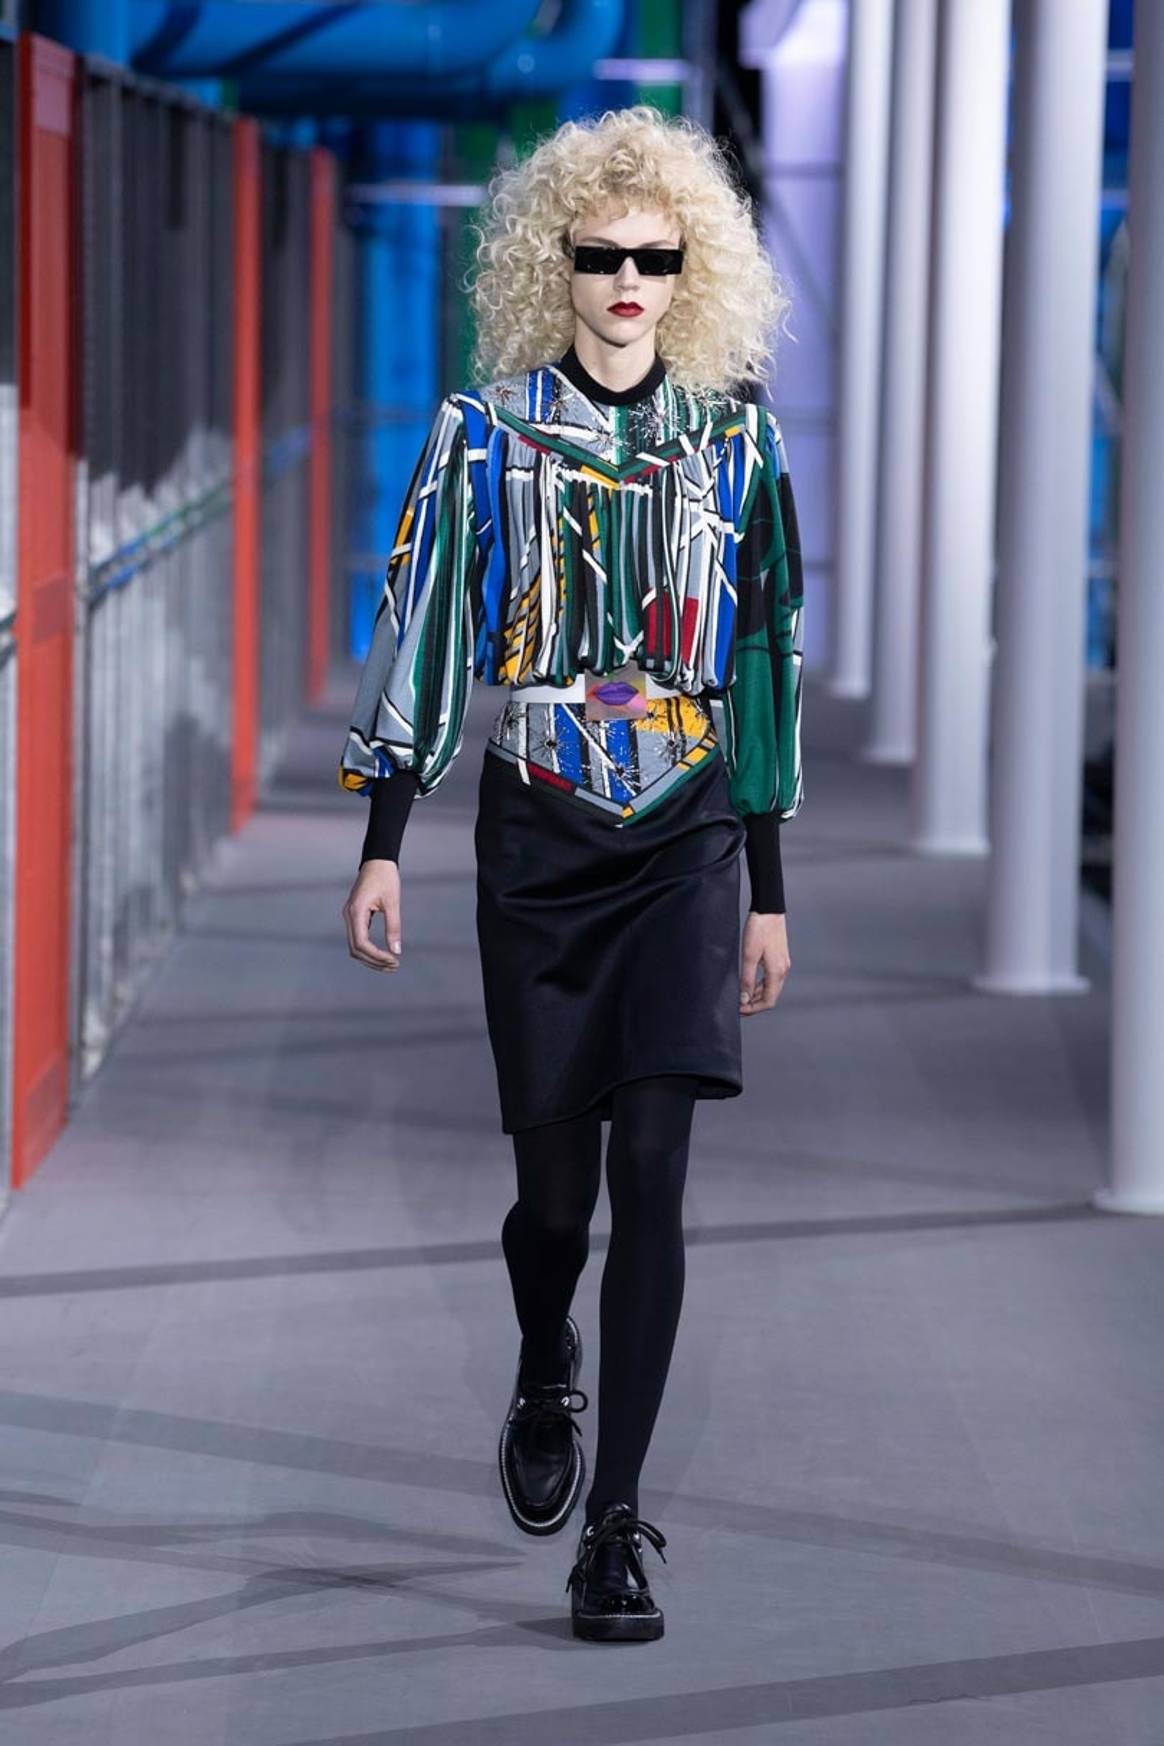 Mezcla de colores e inspiración pop en la última colección de Louis Vuitton